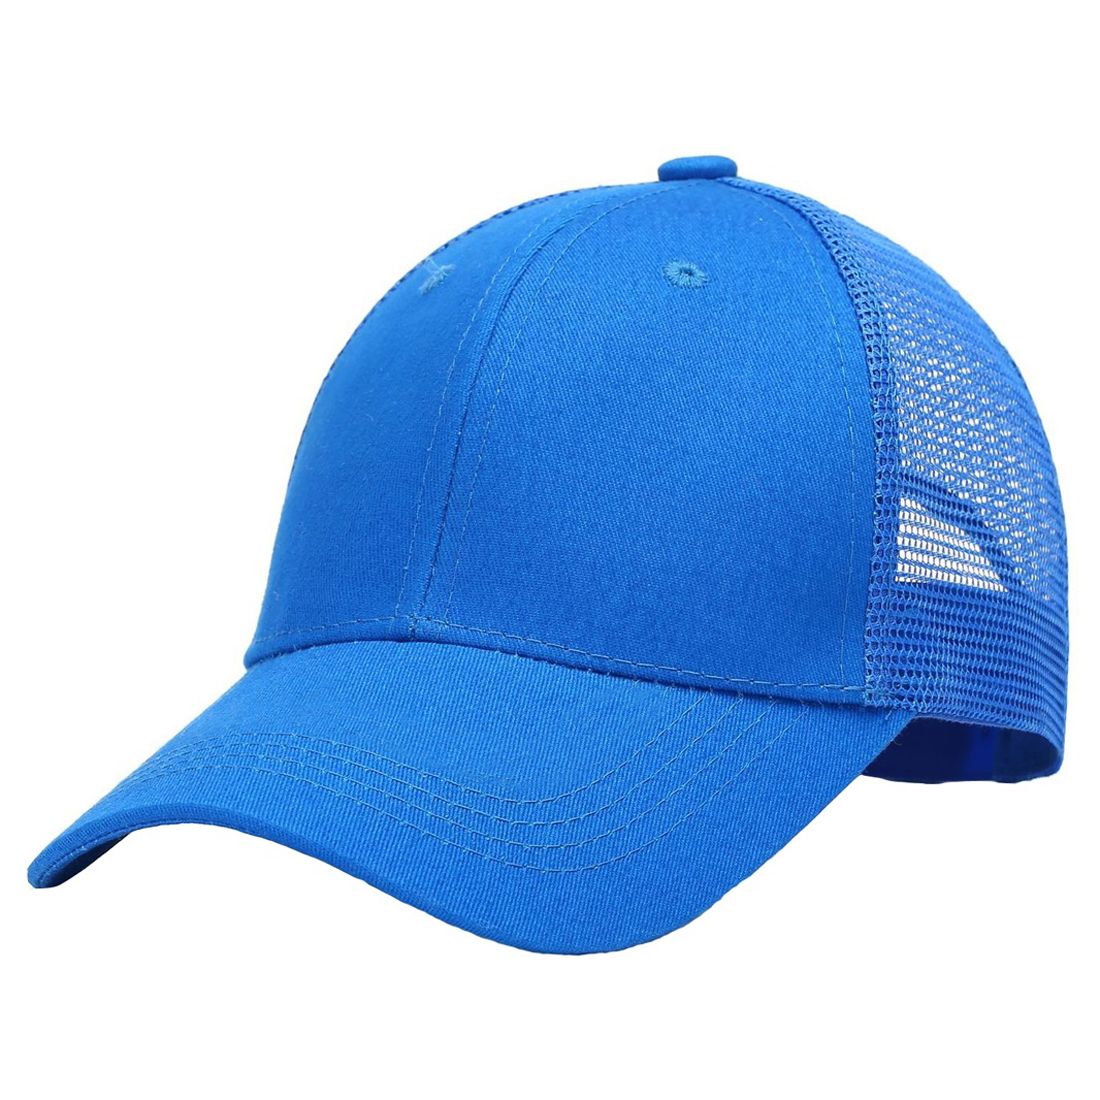 Gorra estructurada personalizada con espalda de malla